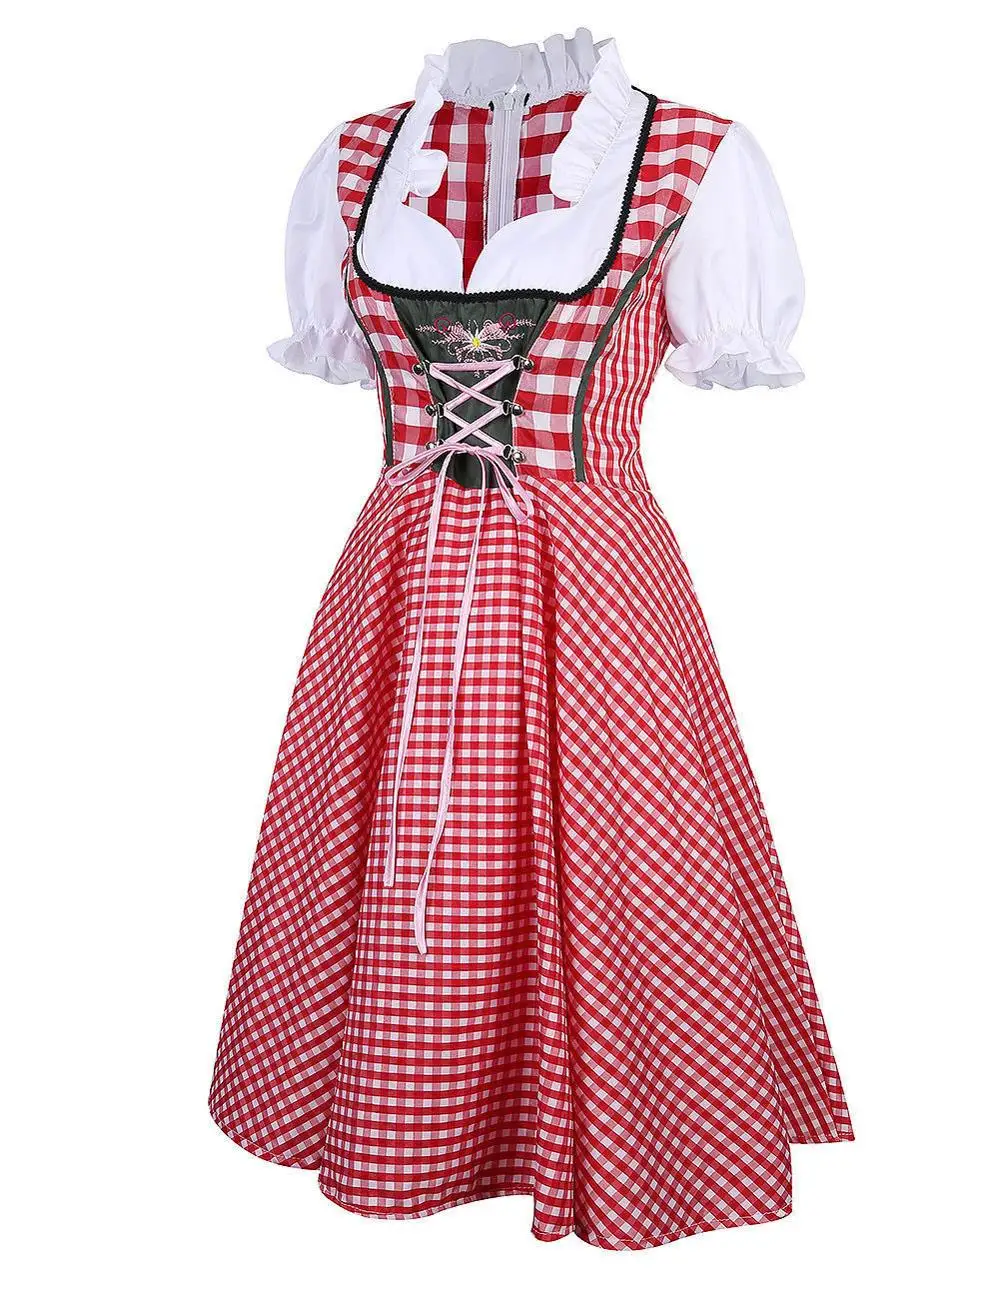 Женский костюм Октоберфеста размера плюс, Красный Клетчатый немецкий костюм Октоберфеста для девочек, костюм дирндла, платье для пива, униформа биергартена